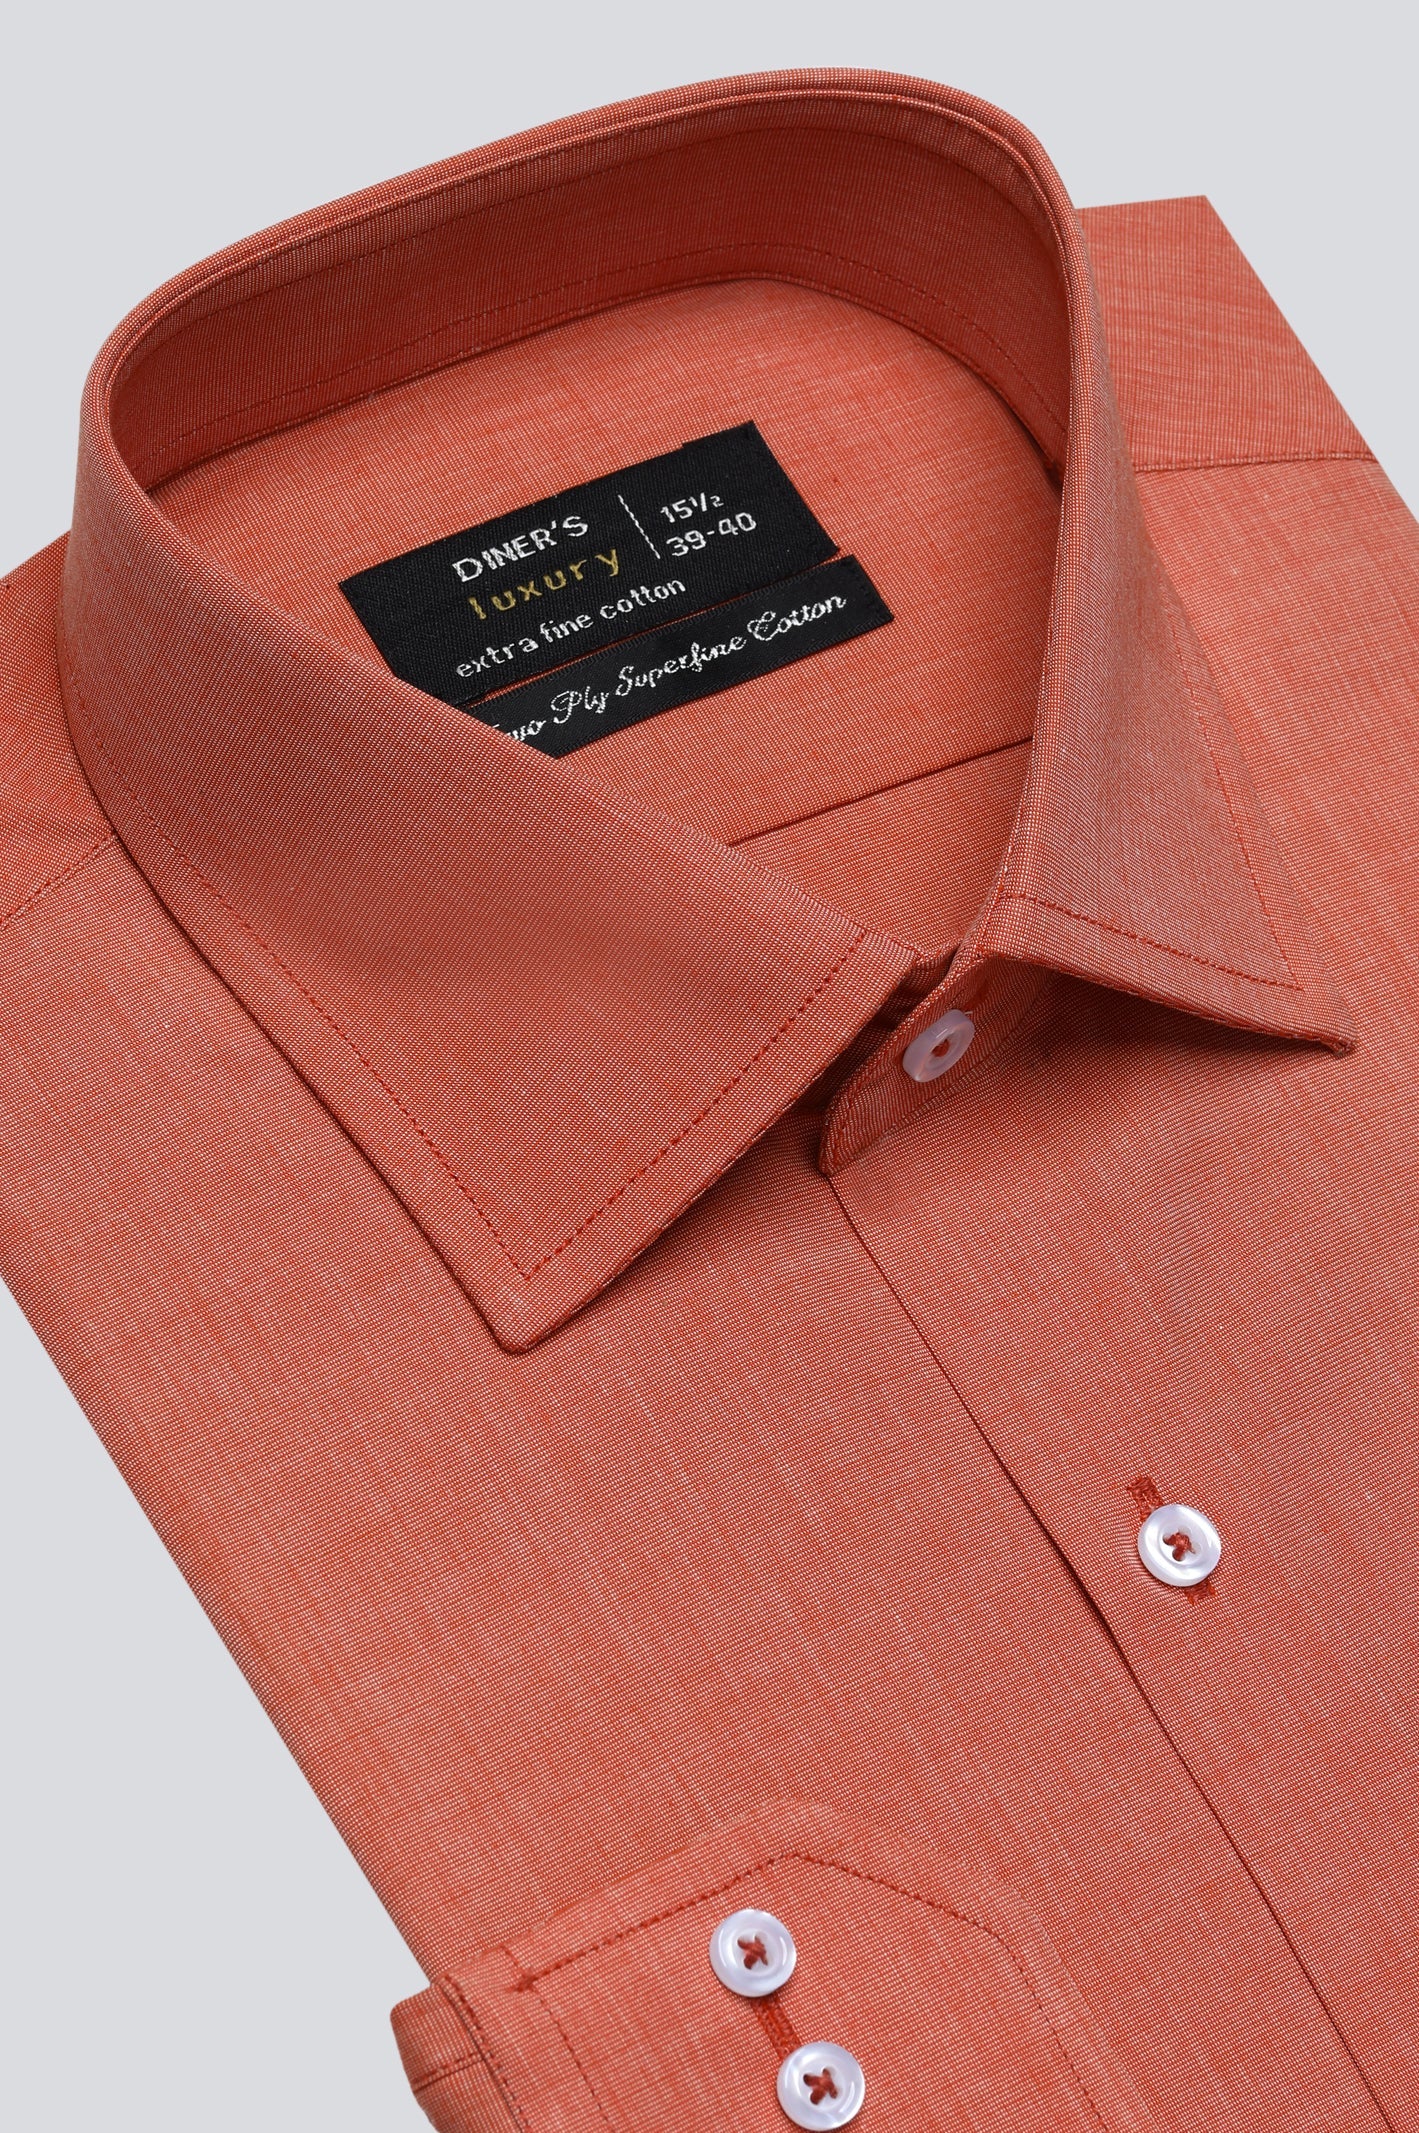 Orange Oxford Formal Shirt For Men - Diners